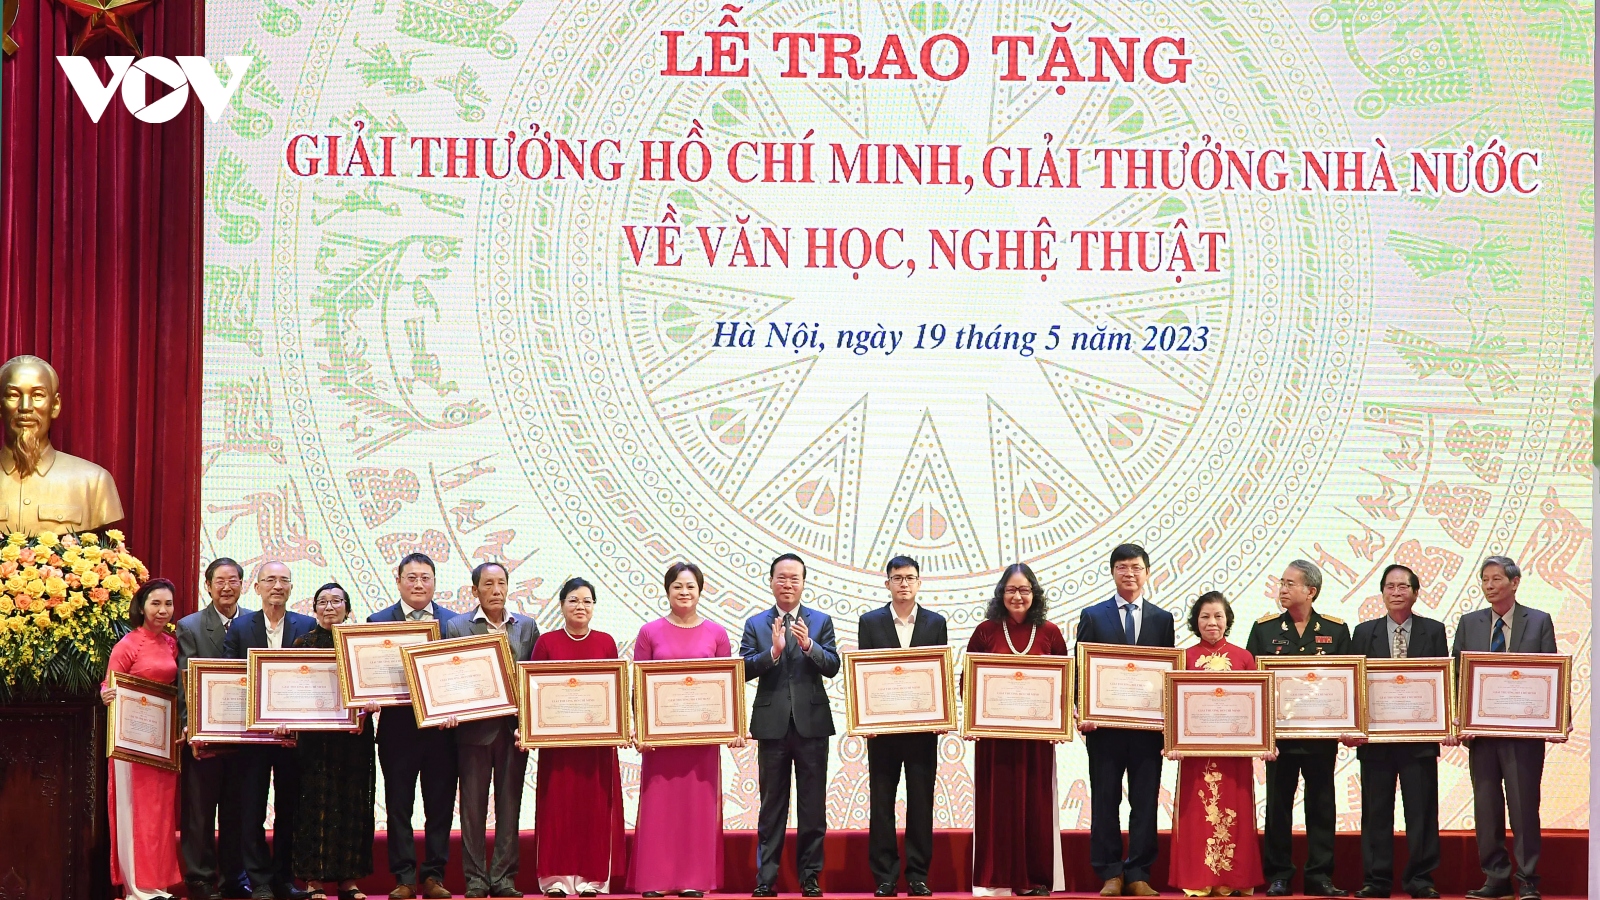 Trao Giải thưởng Hồ Chí Minh, Giải thưởng Nhà nước cho 128 tác giả, đồng tác giả